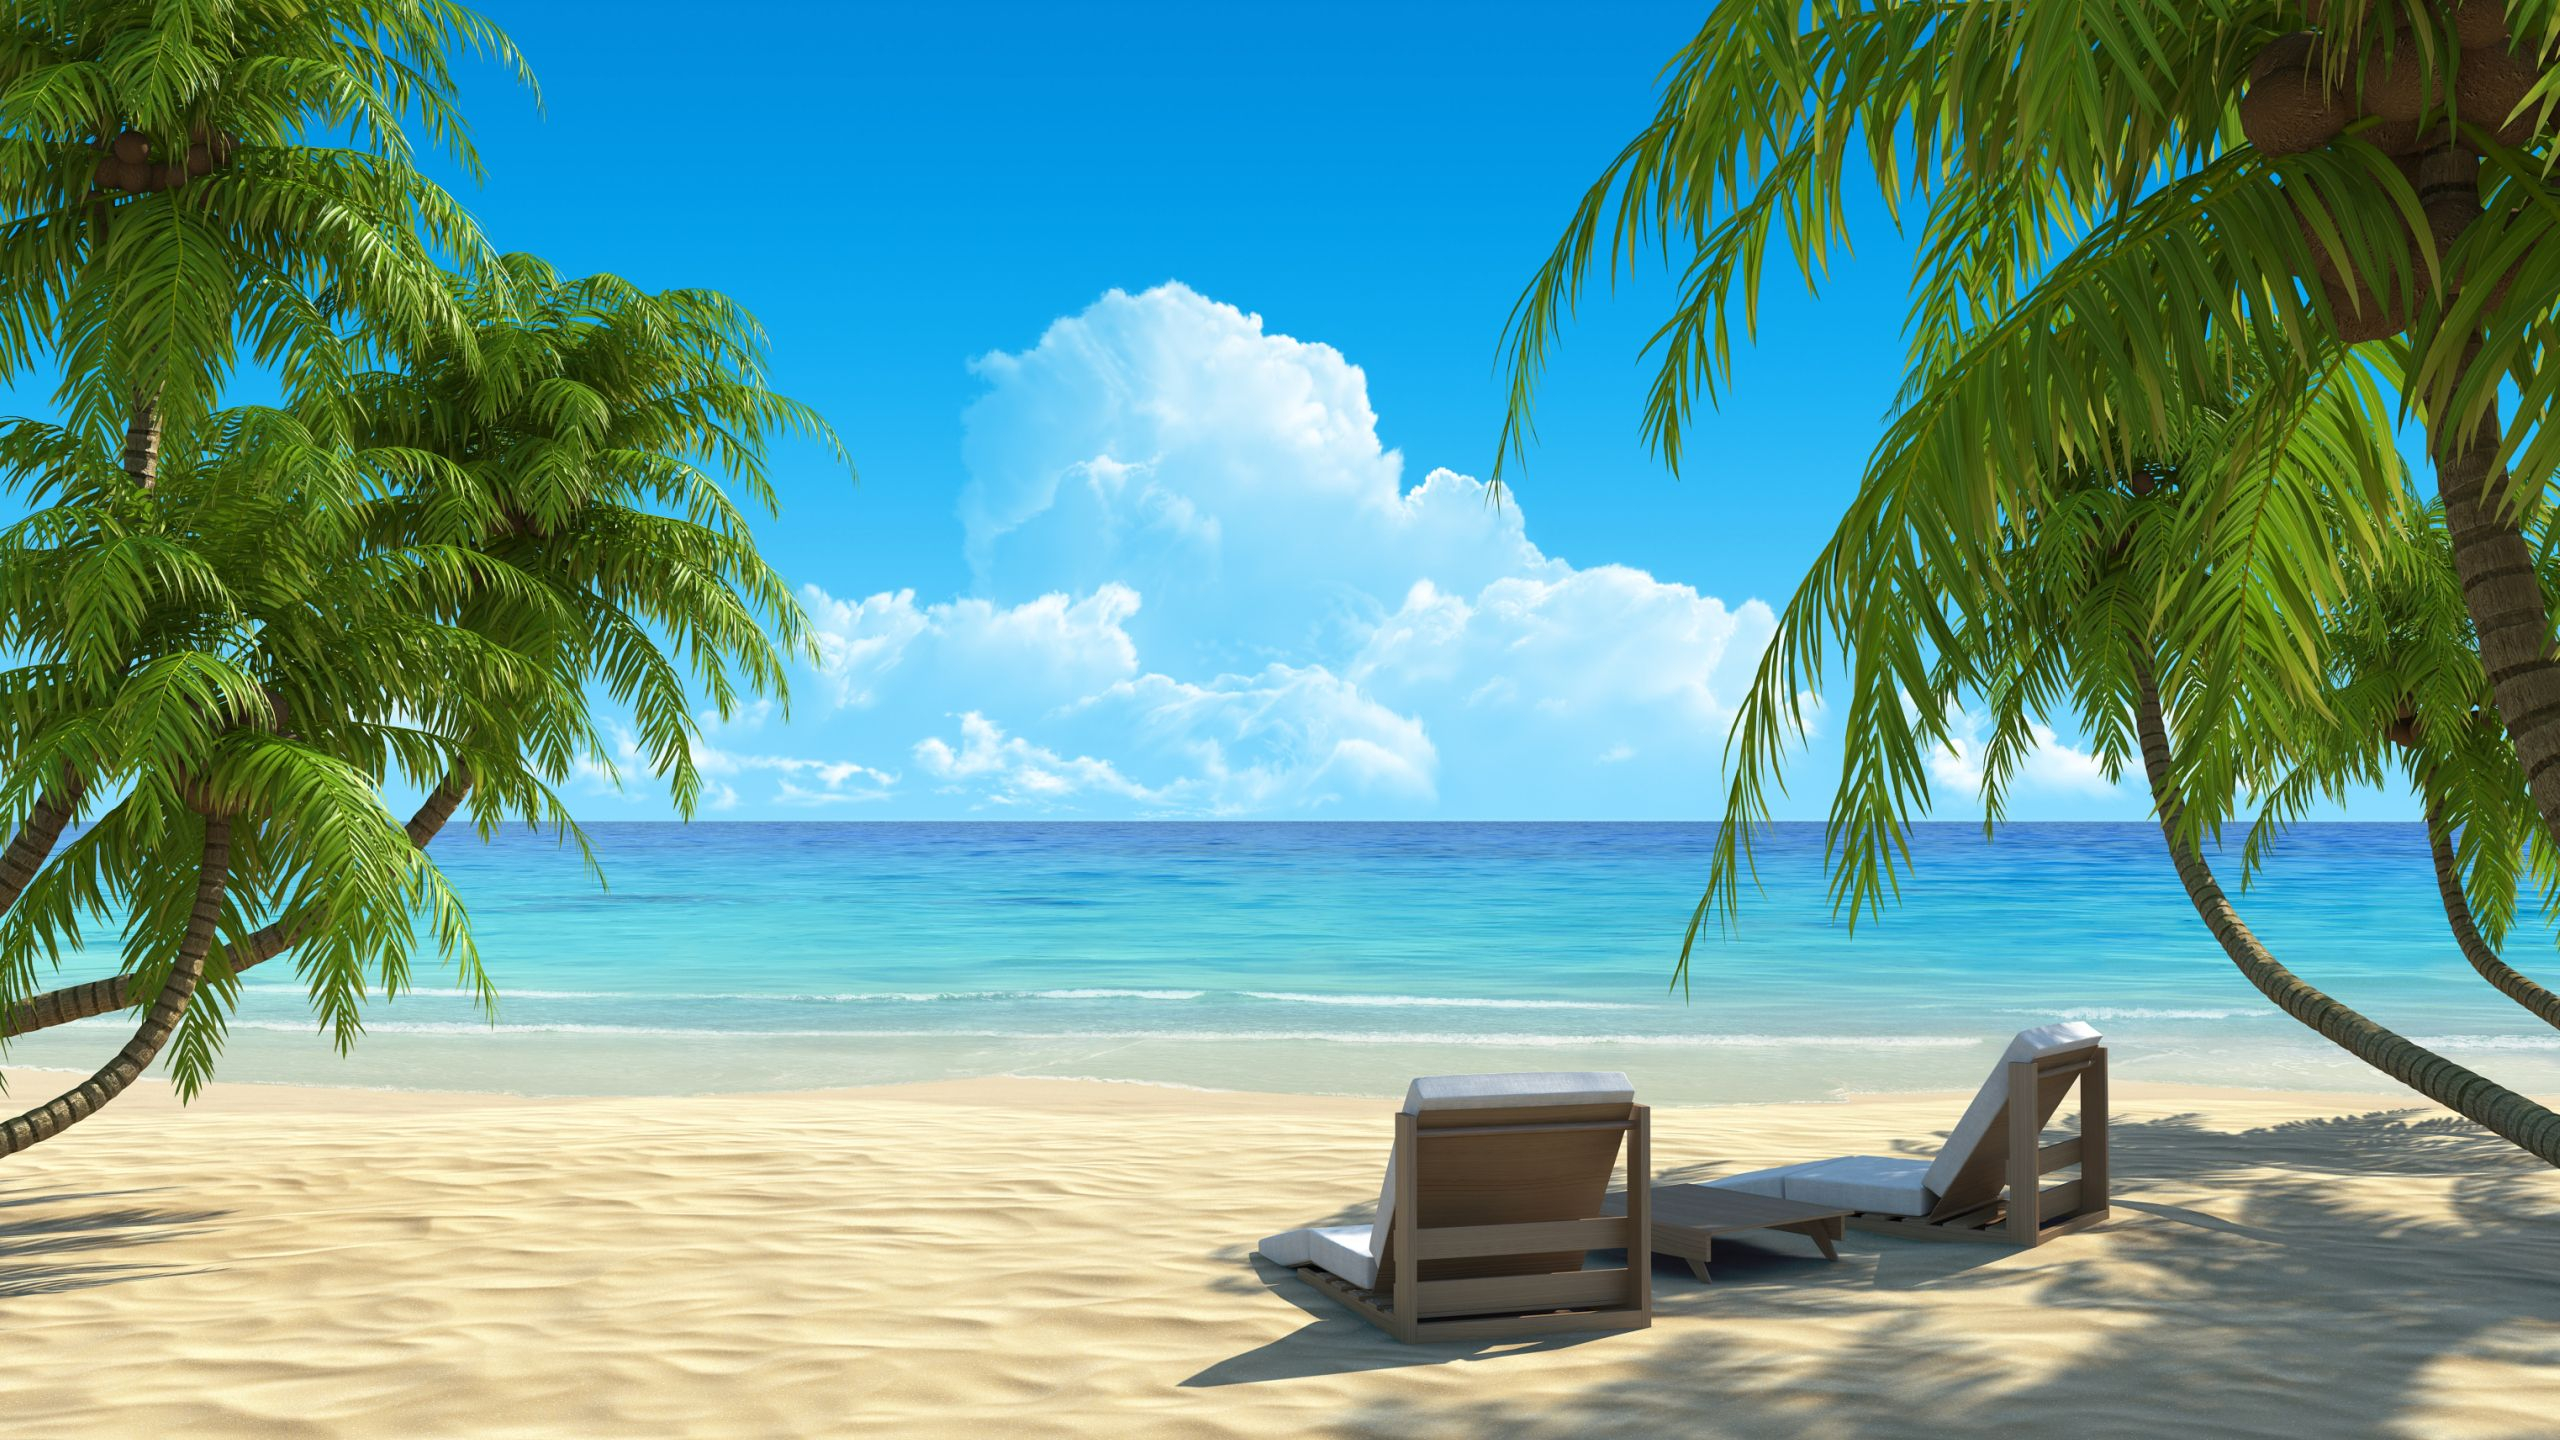 2560x1440 paradise Bing Images | Paysages magnifiques, Photo paradisiaque, Plage de sable blanc